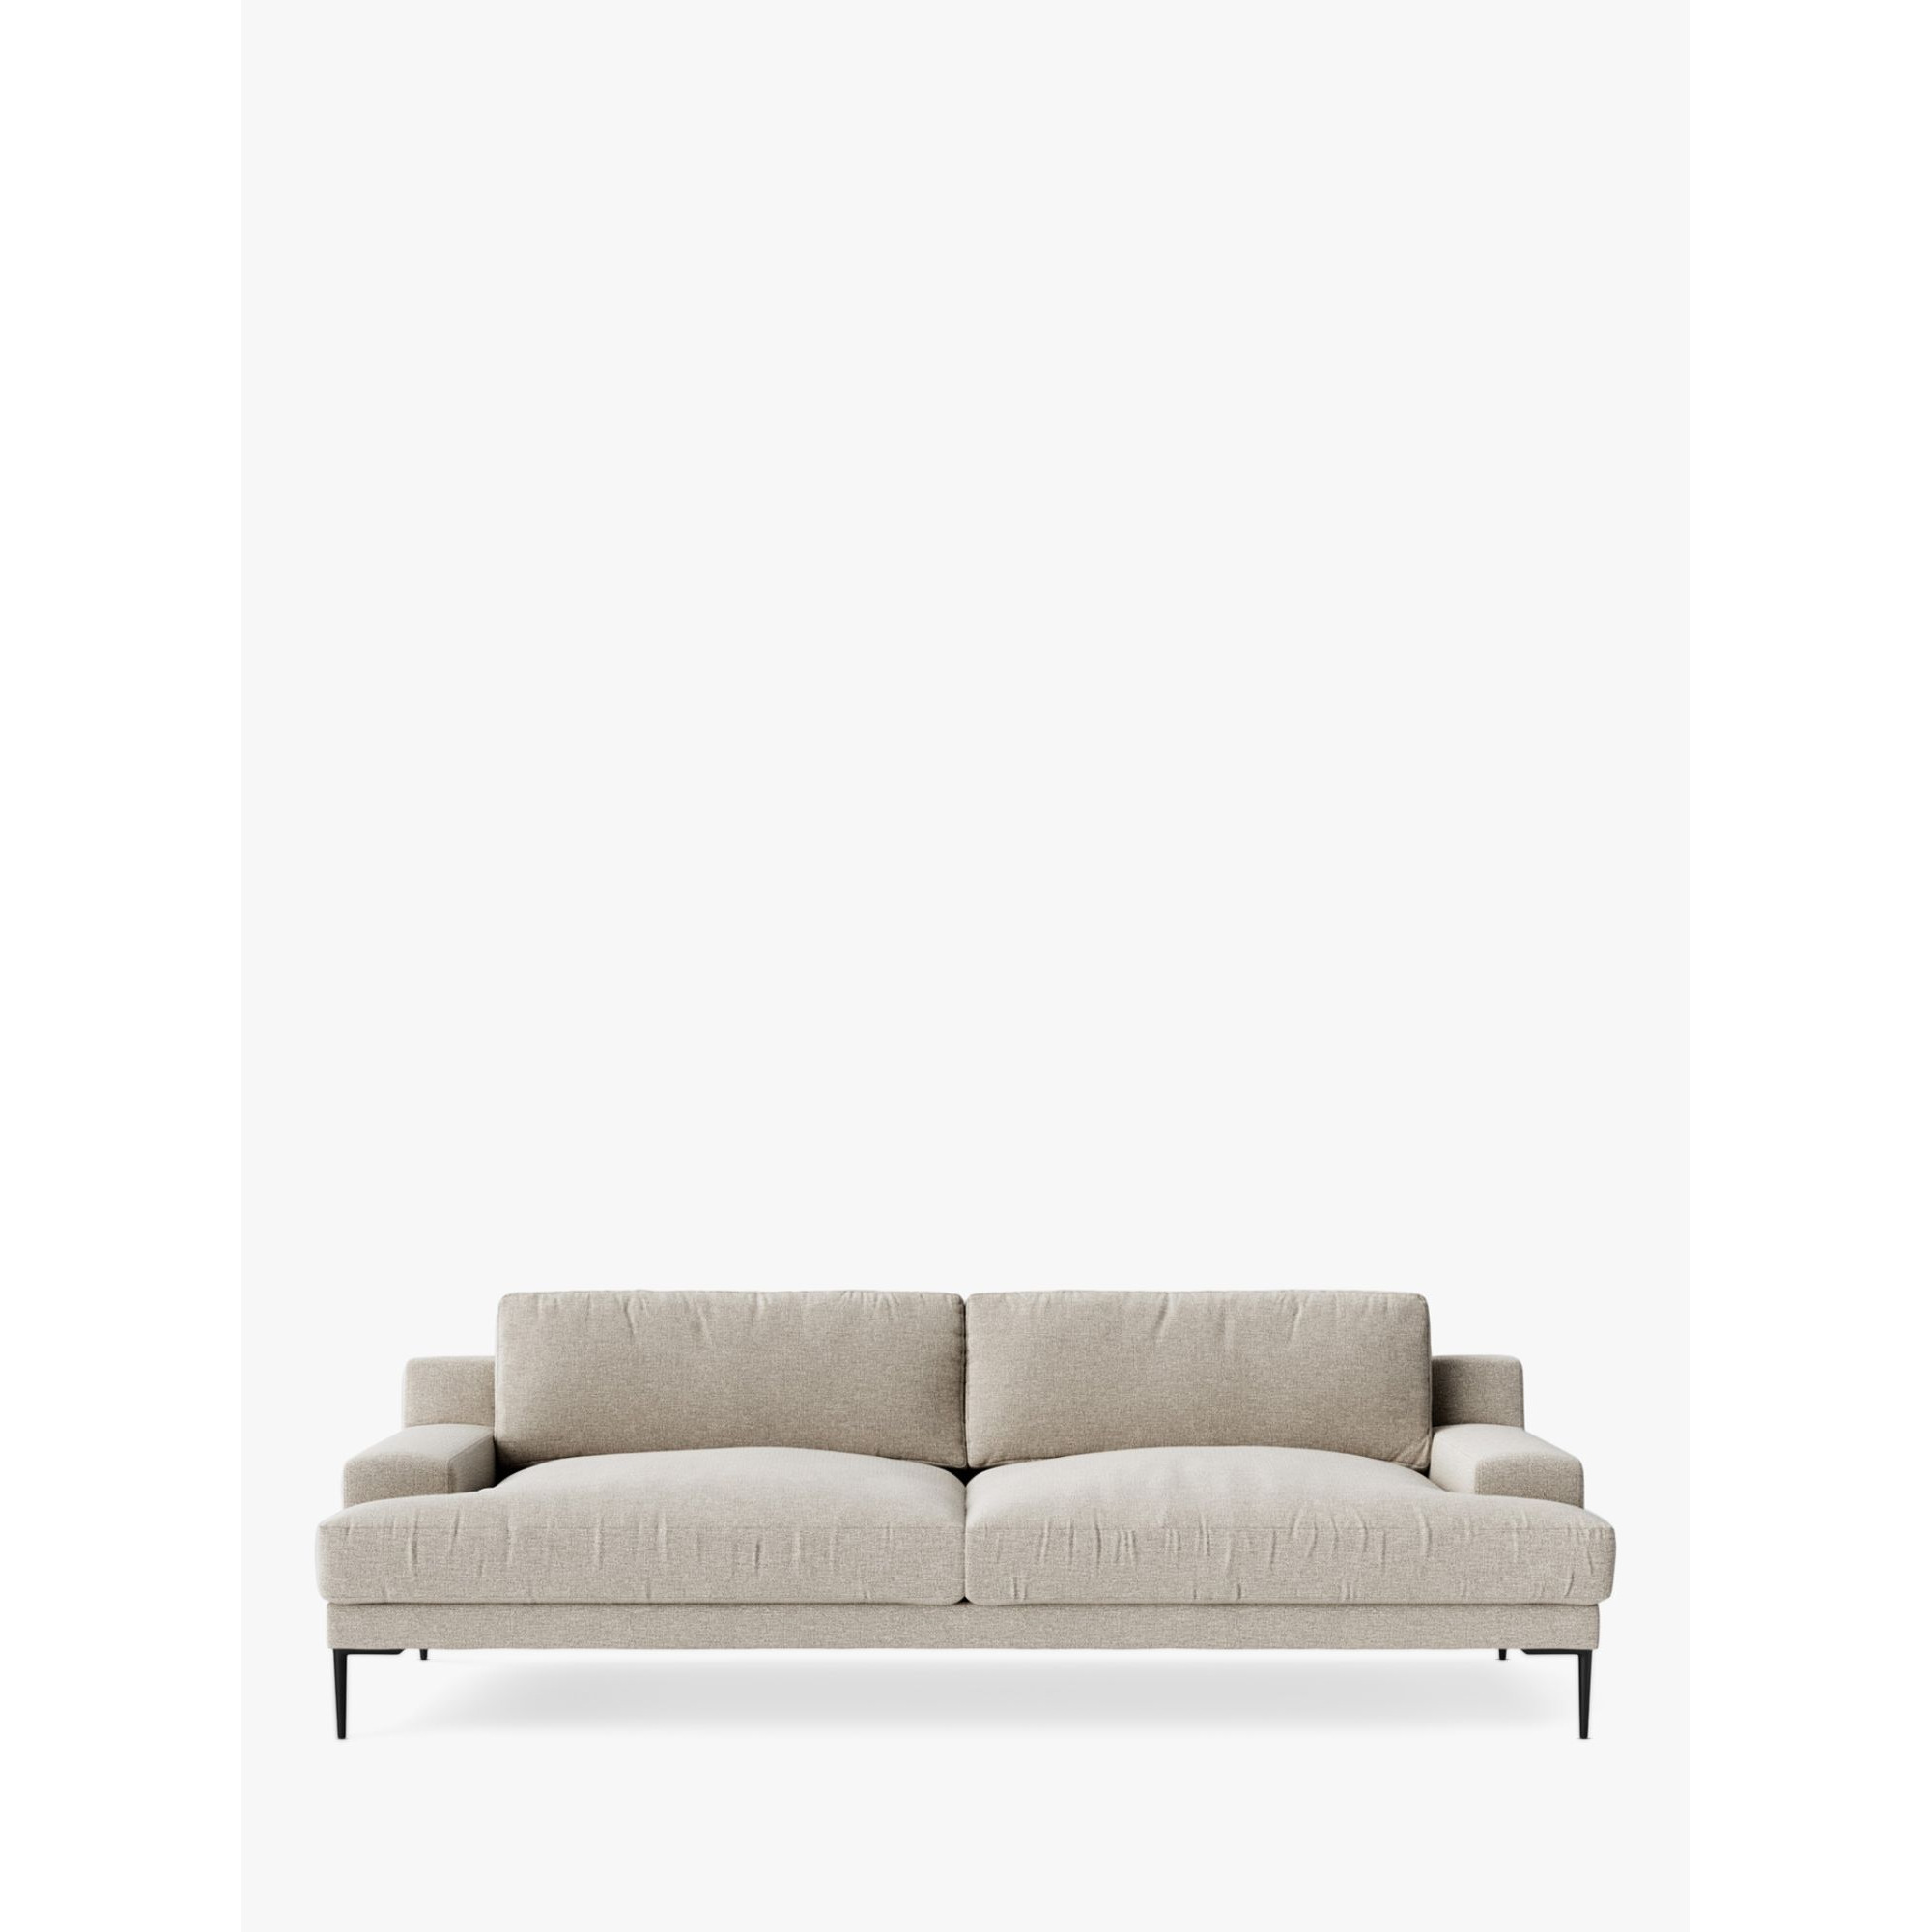 Swoon Almera Large 3 Seater Sofa, Metal Leg - image 1